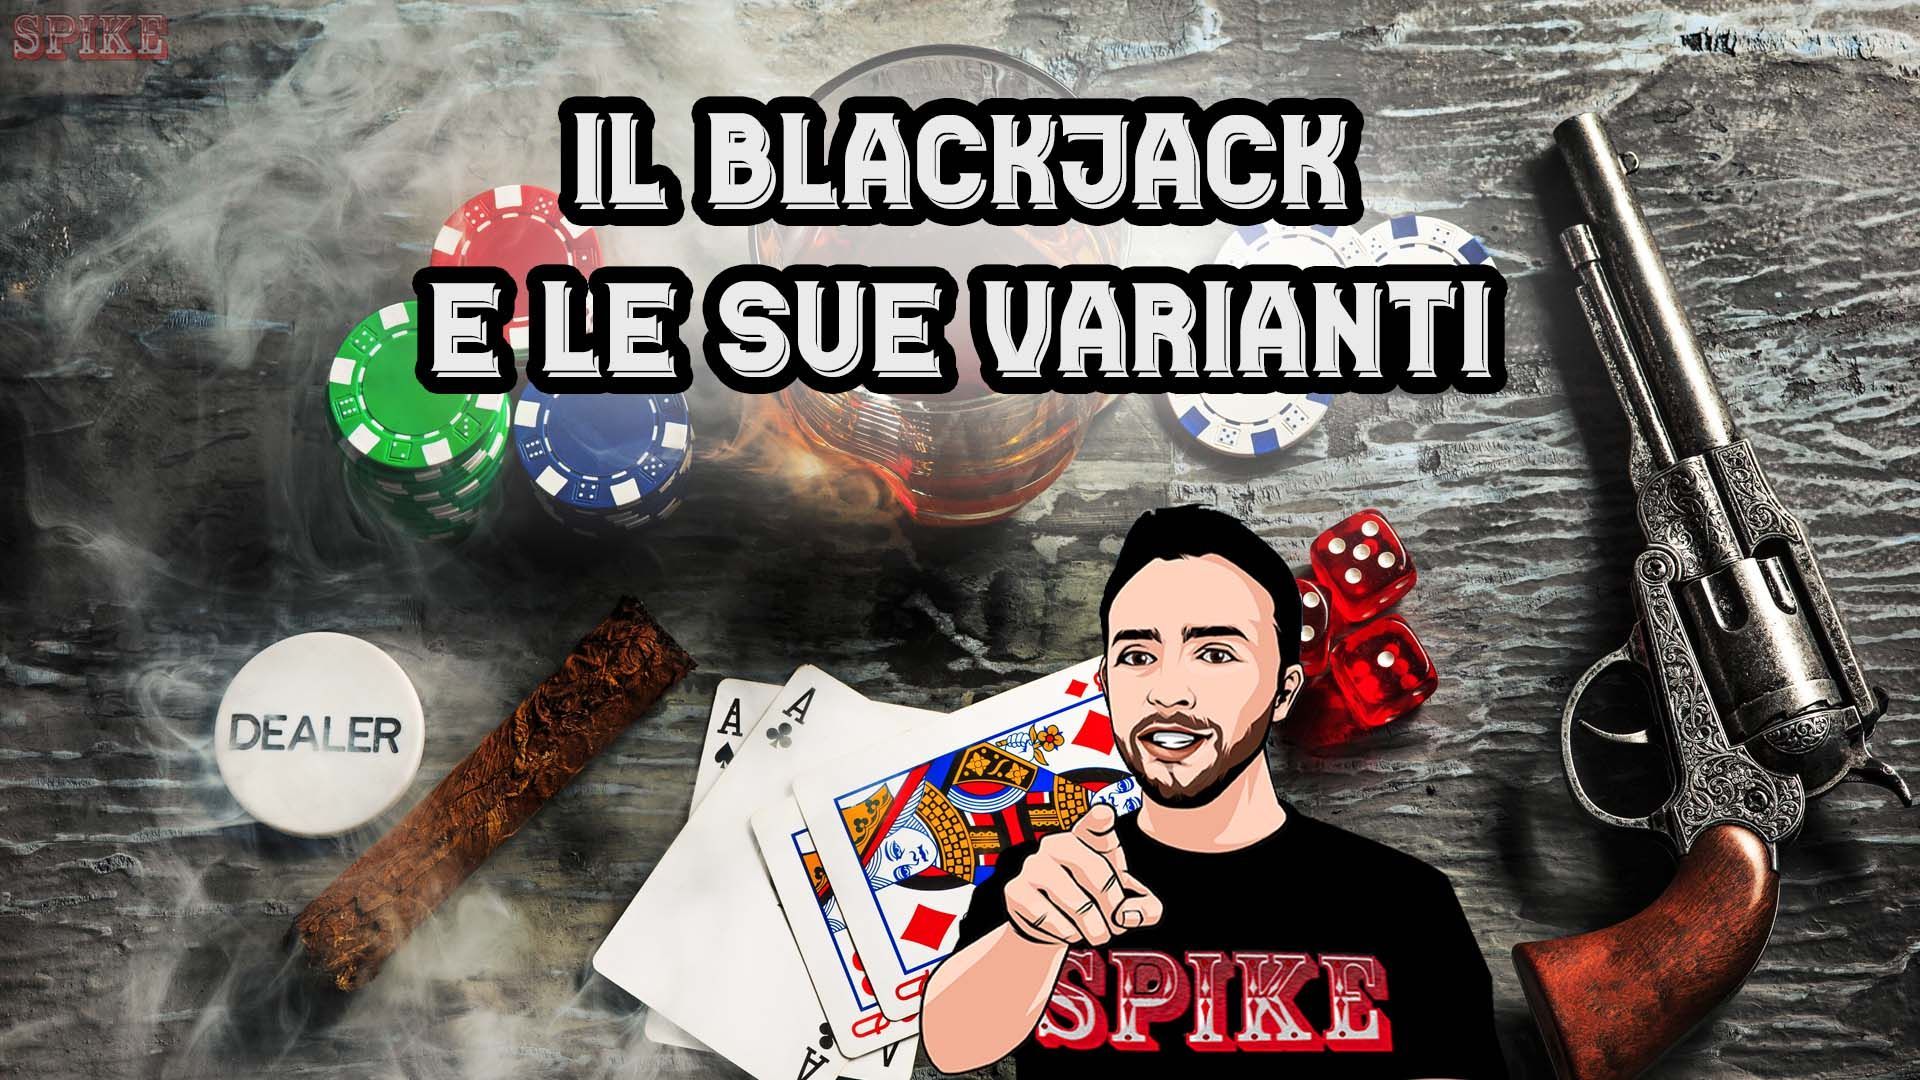 Varianti Blackjack